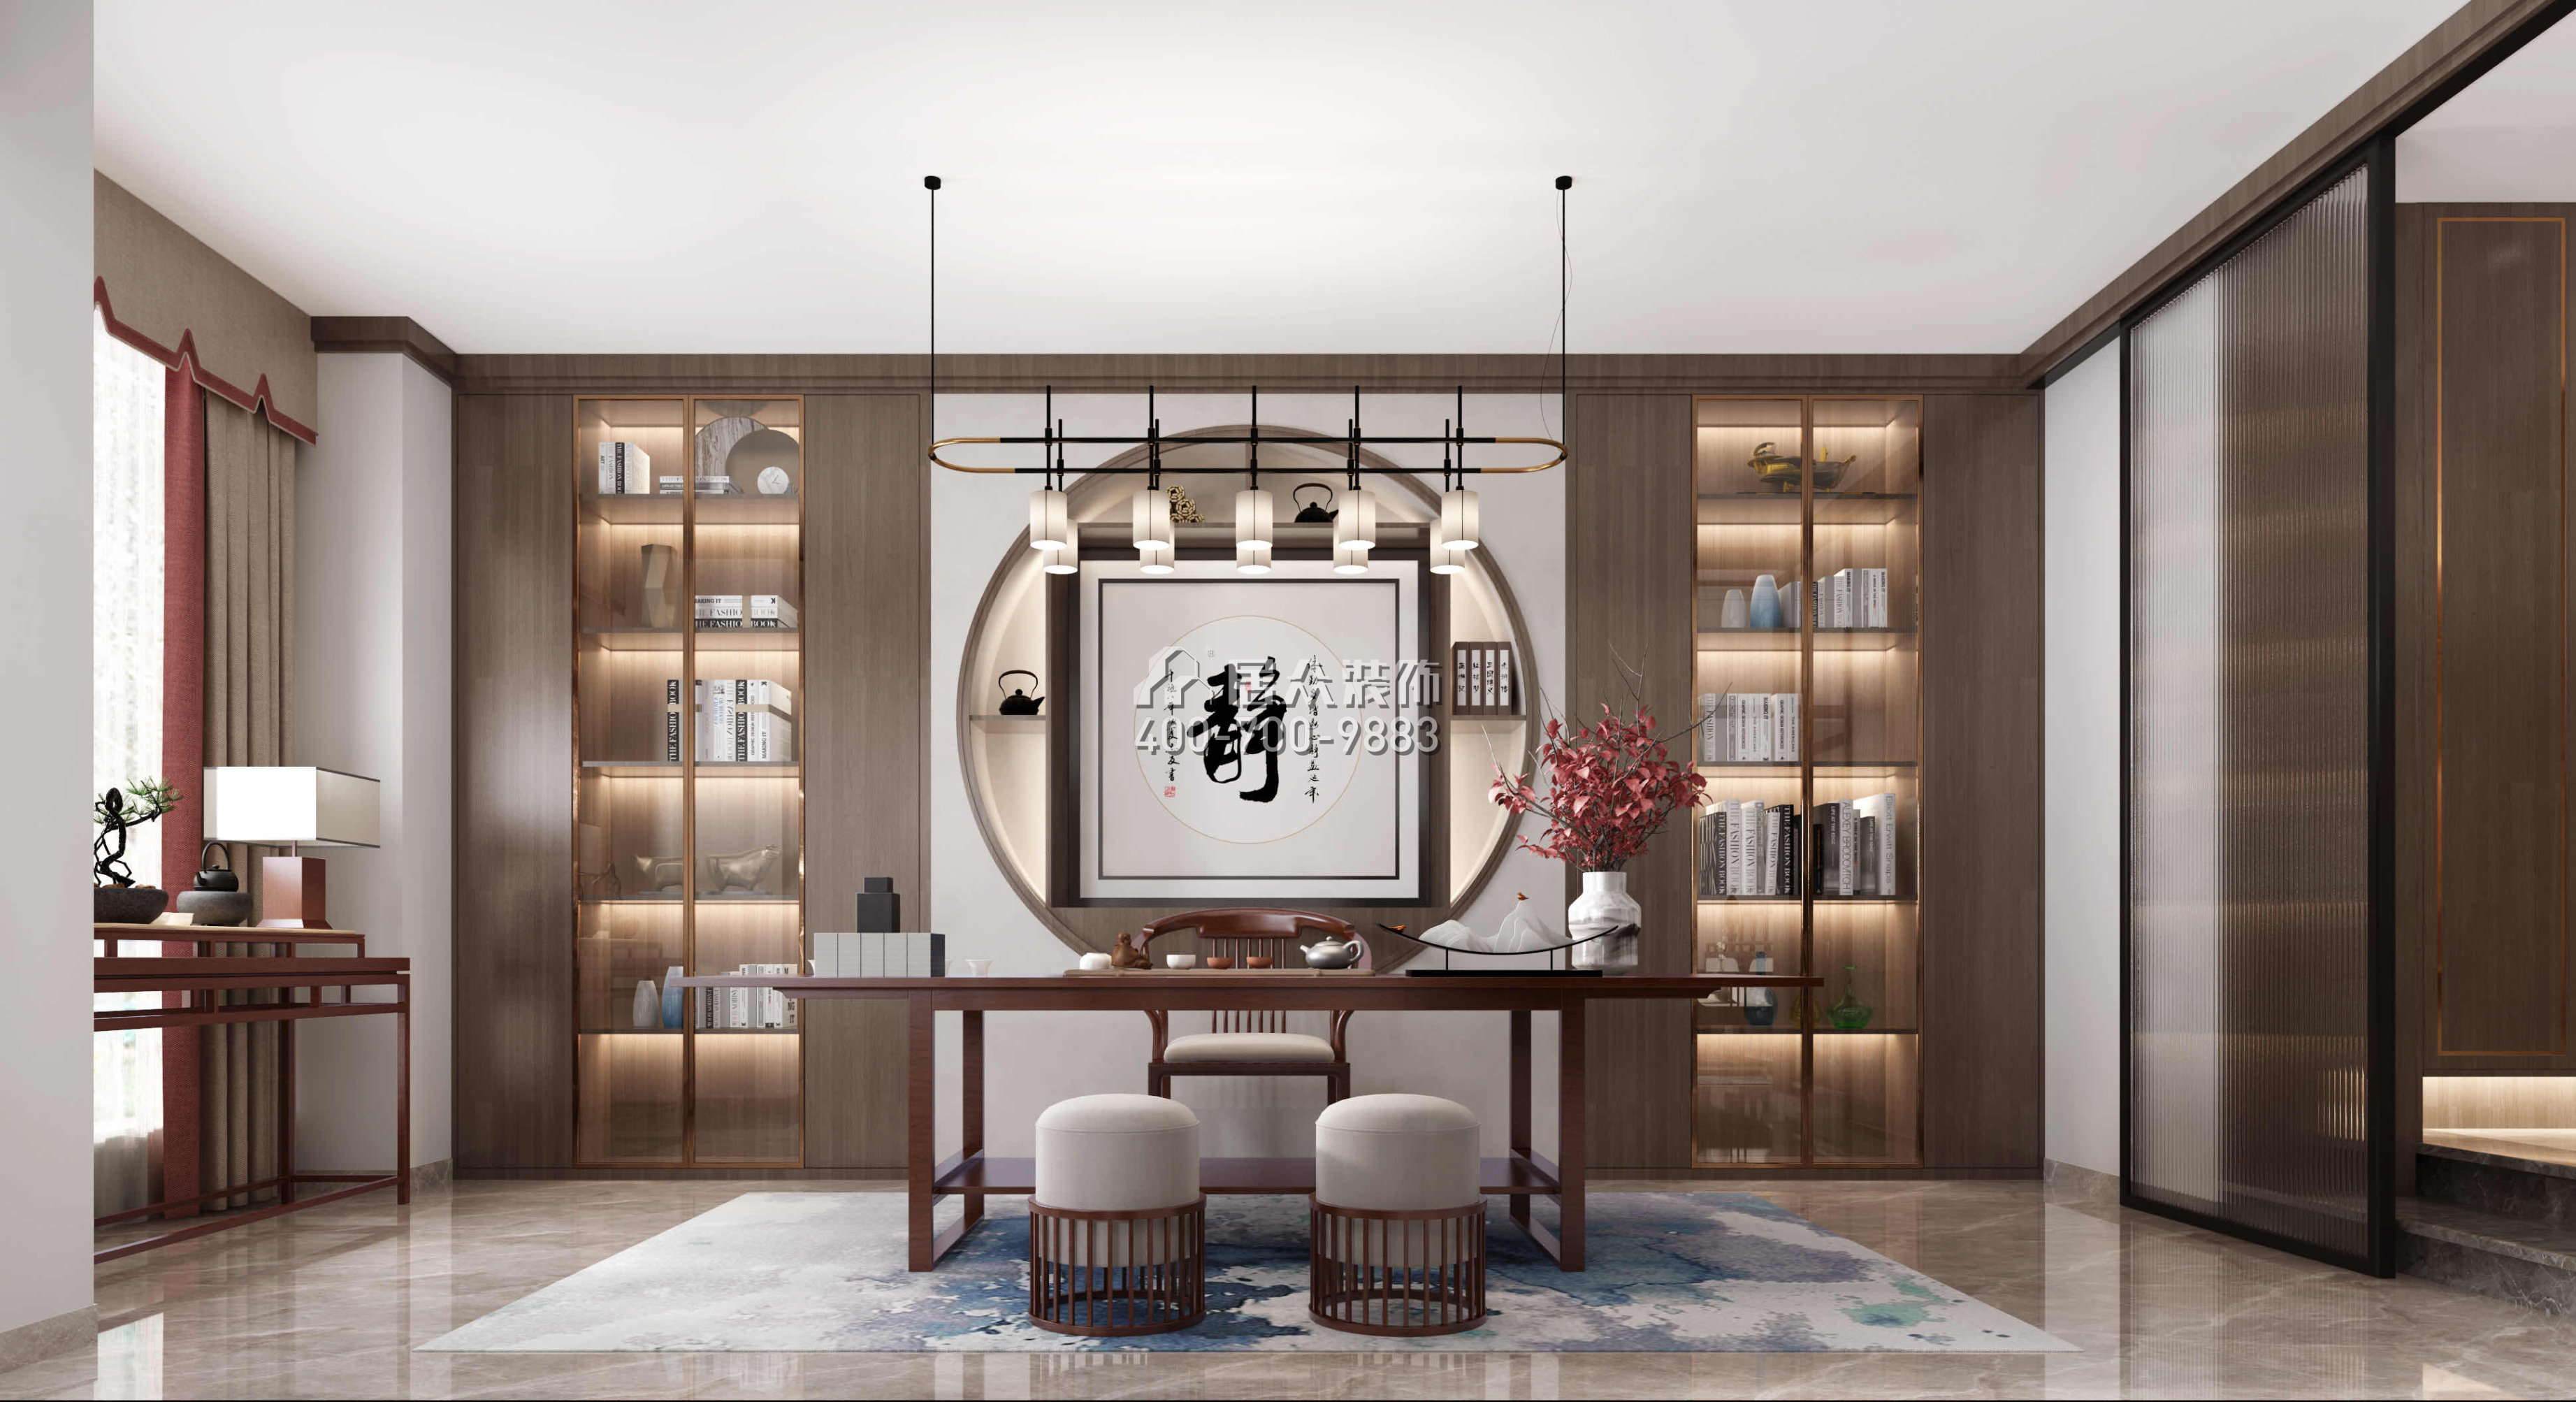 锦绣国际花城200平方米中式风格平层户型茶室装修效果图